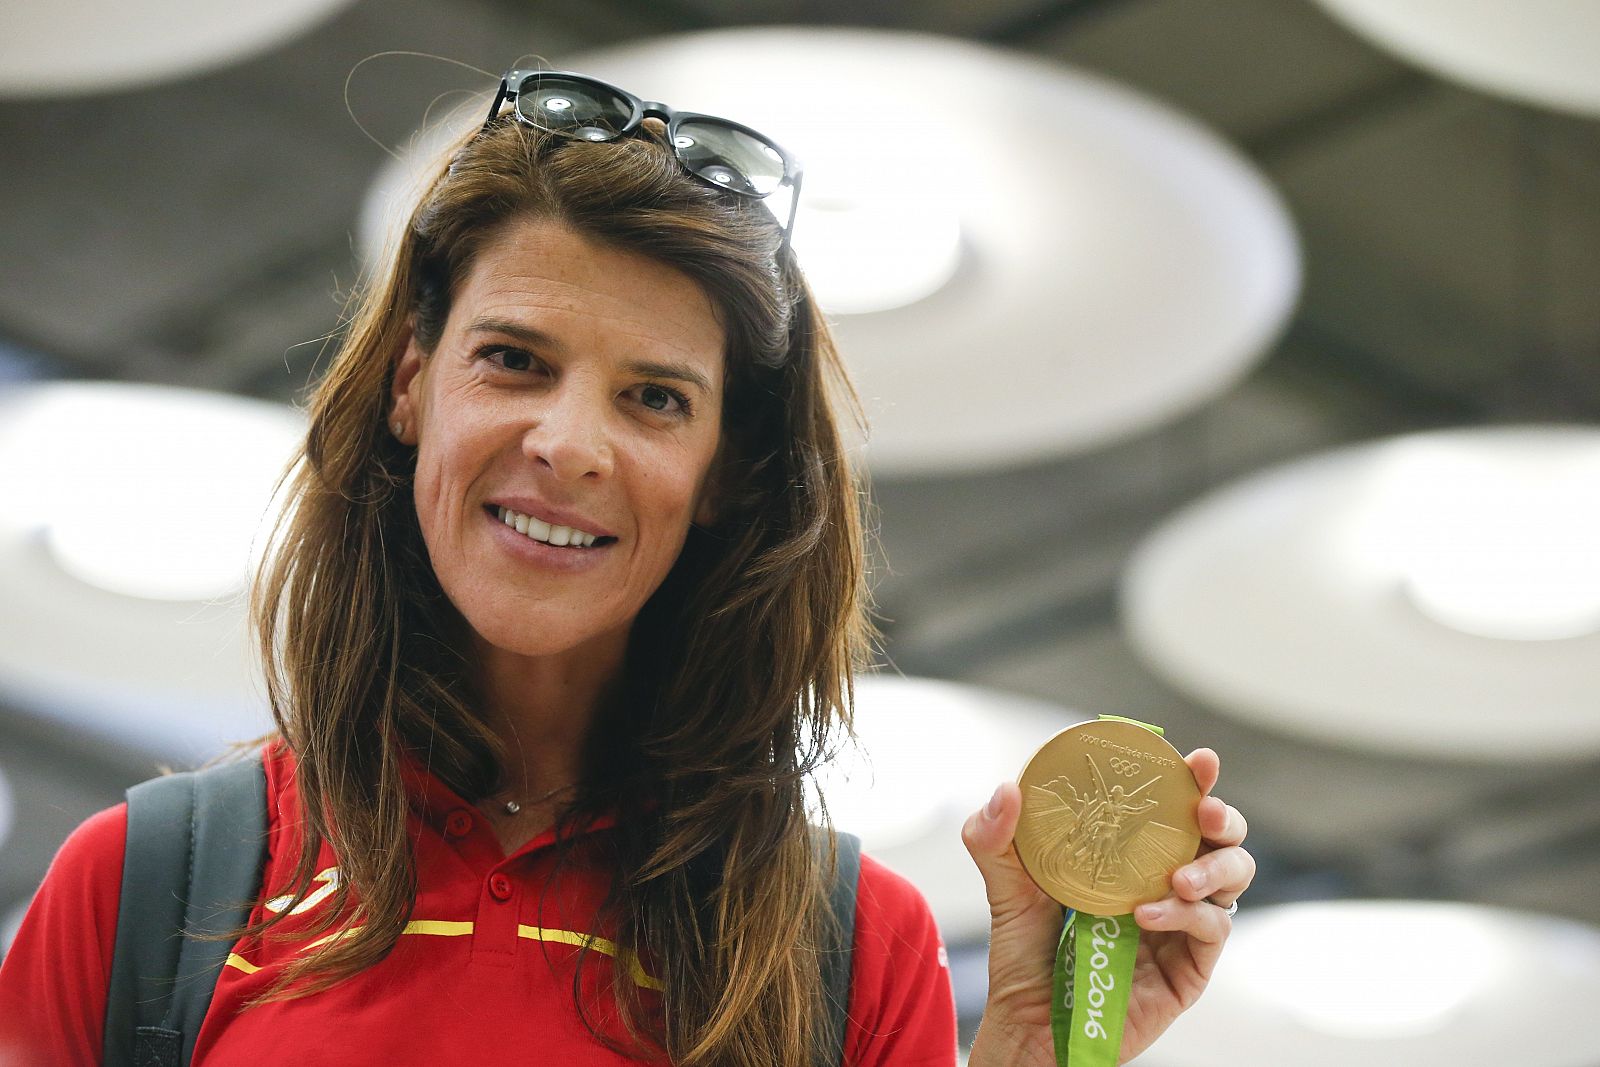 La campeona olímpica en salto de altura Ruth Beitia, a su llegada al Aeropuerto Adolfo Suárez Madrid - Barajas.